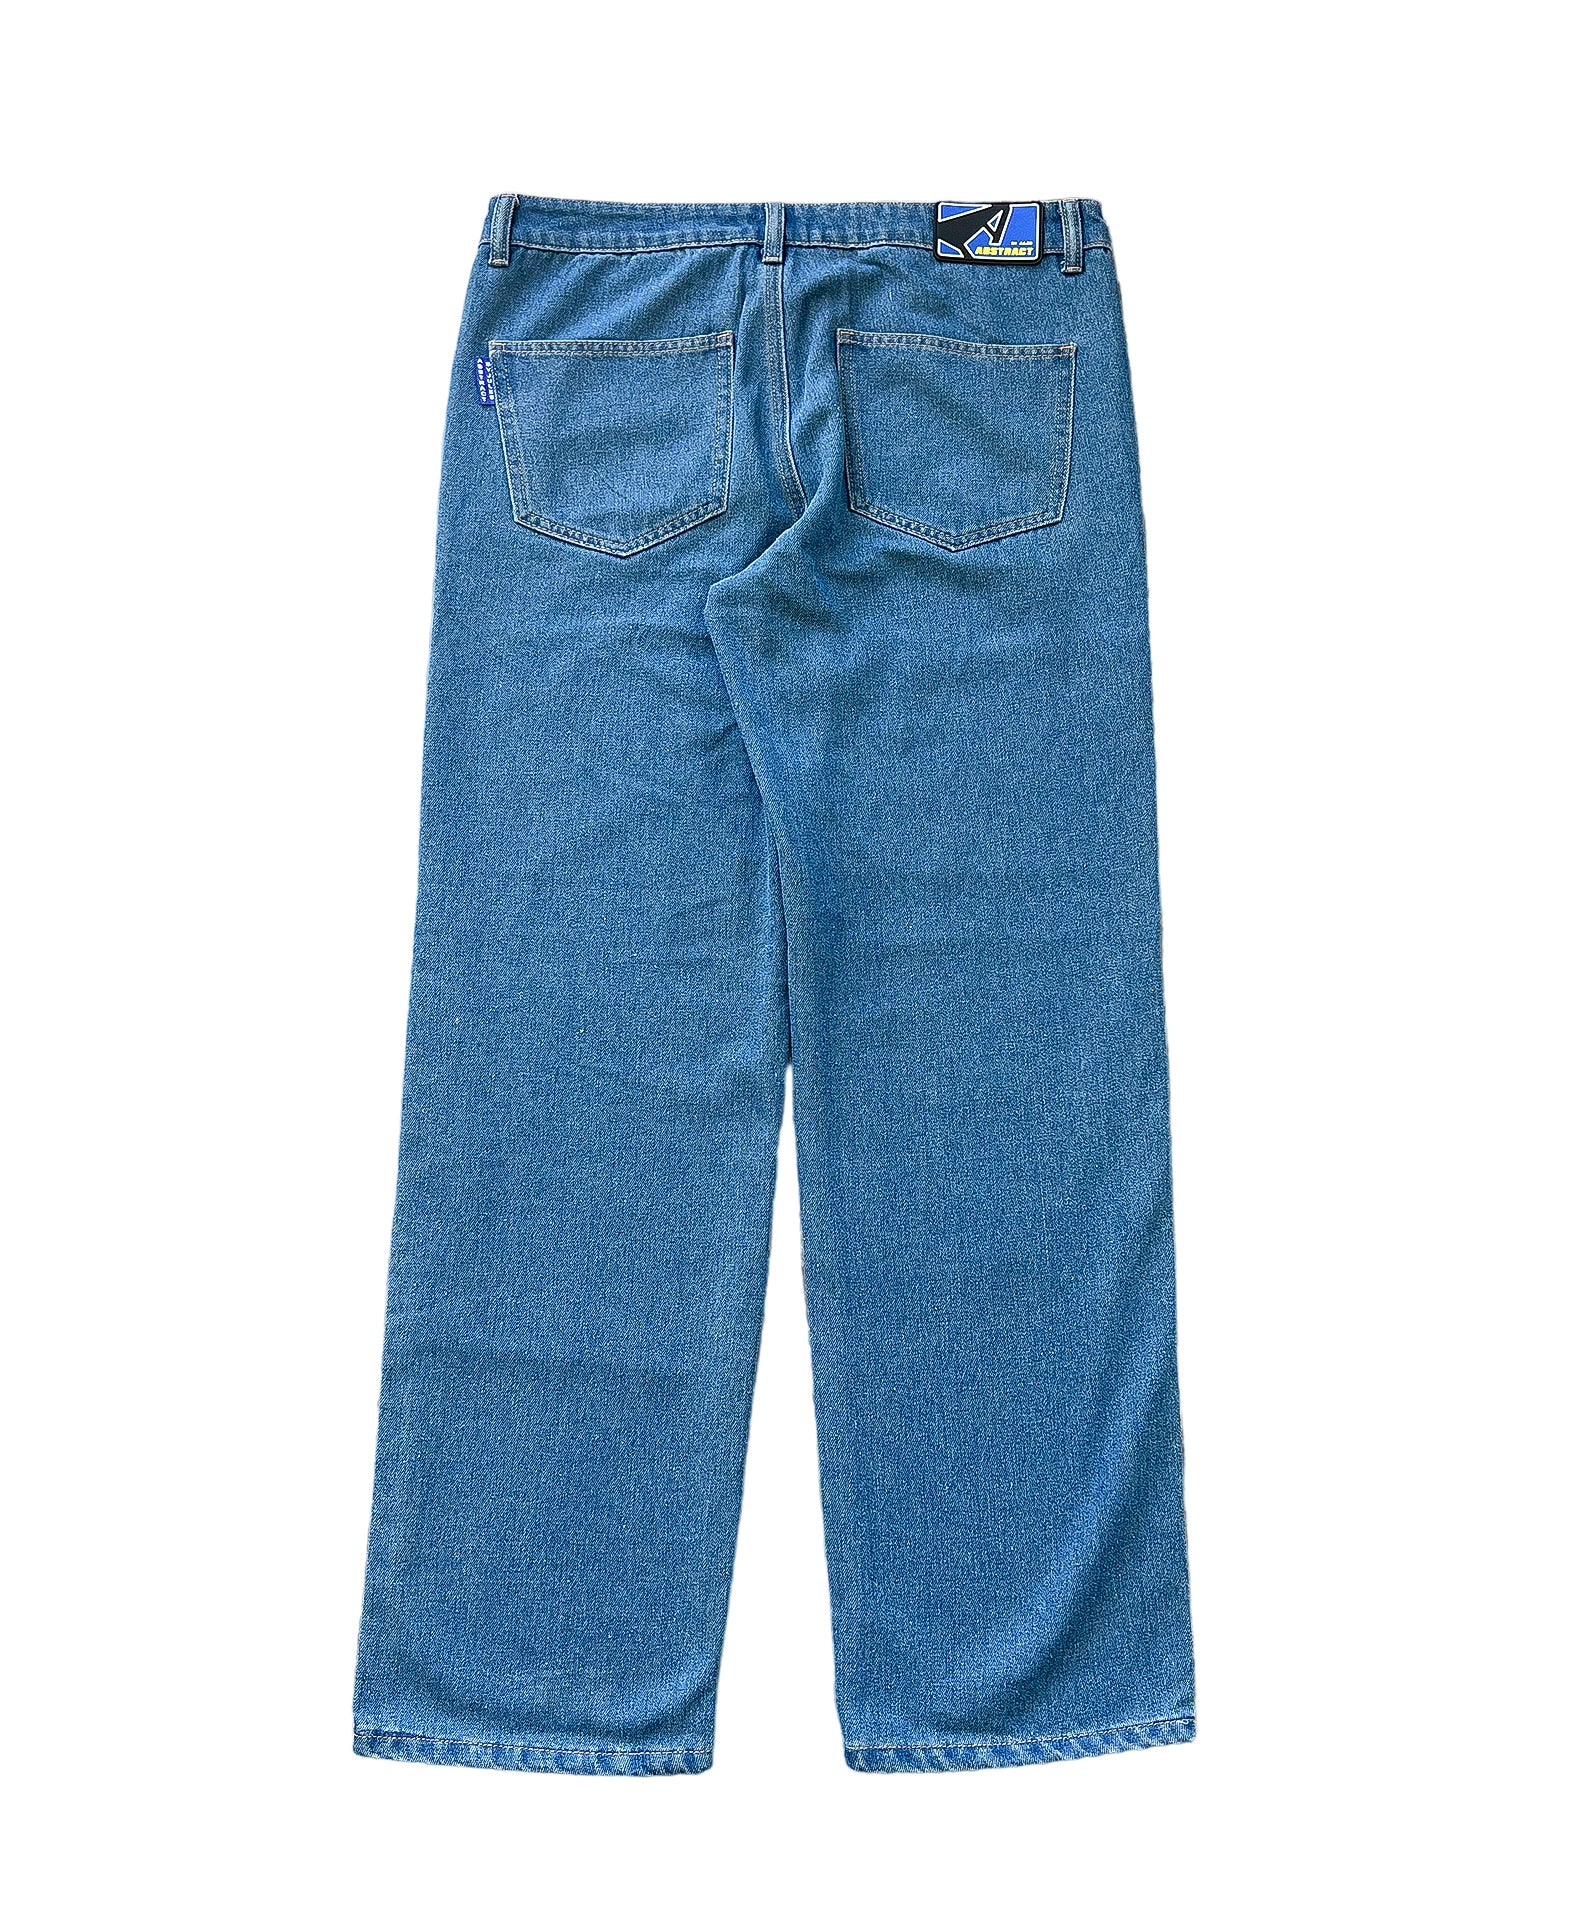 Suede Chap Jeans - Blue